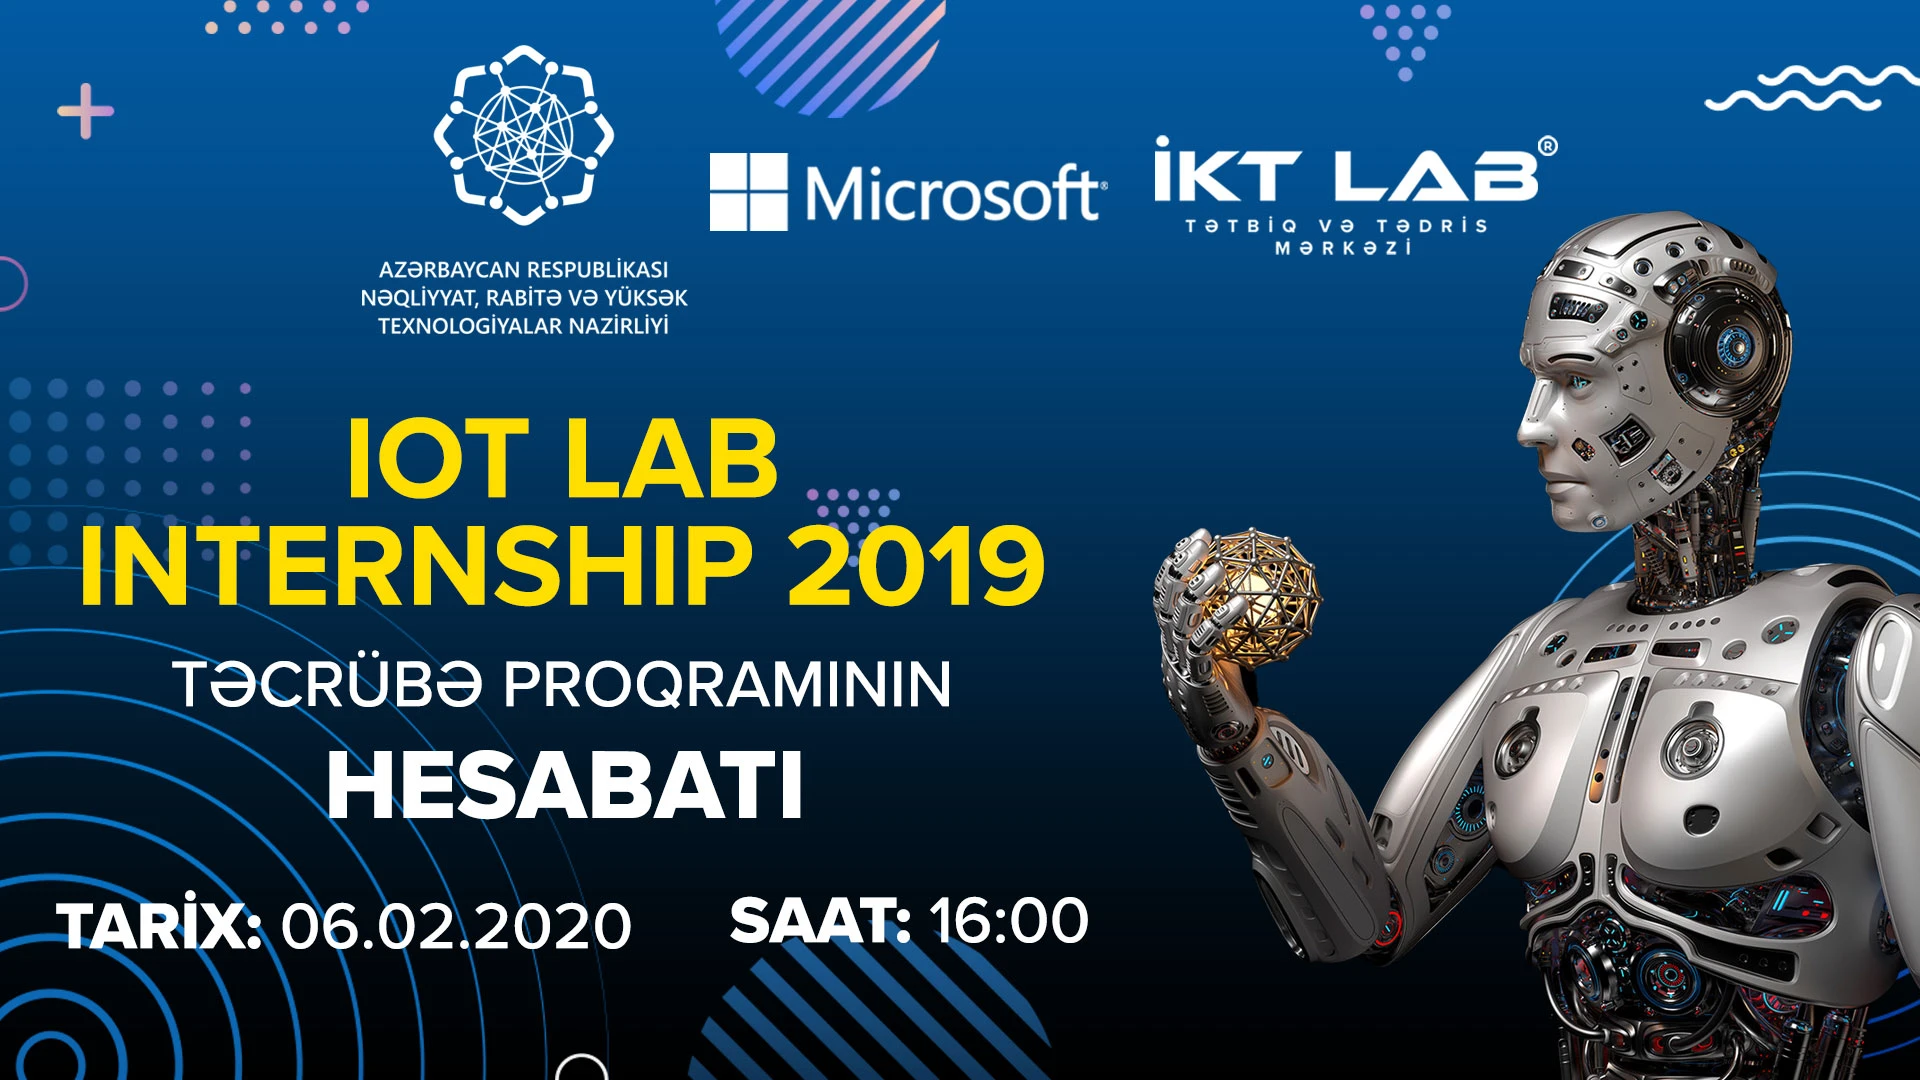 “IoT LAB Internship 2019” Hesabat